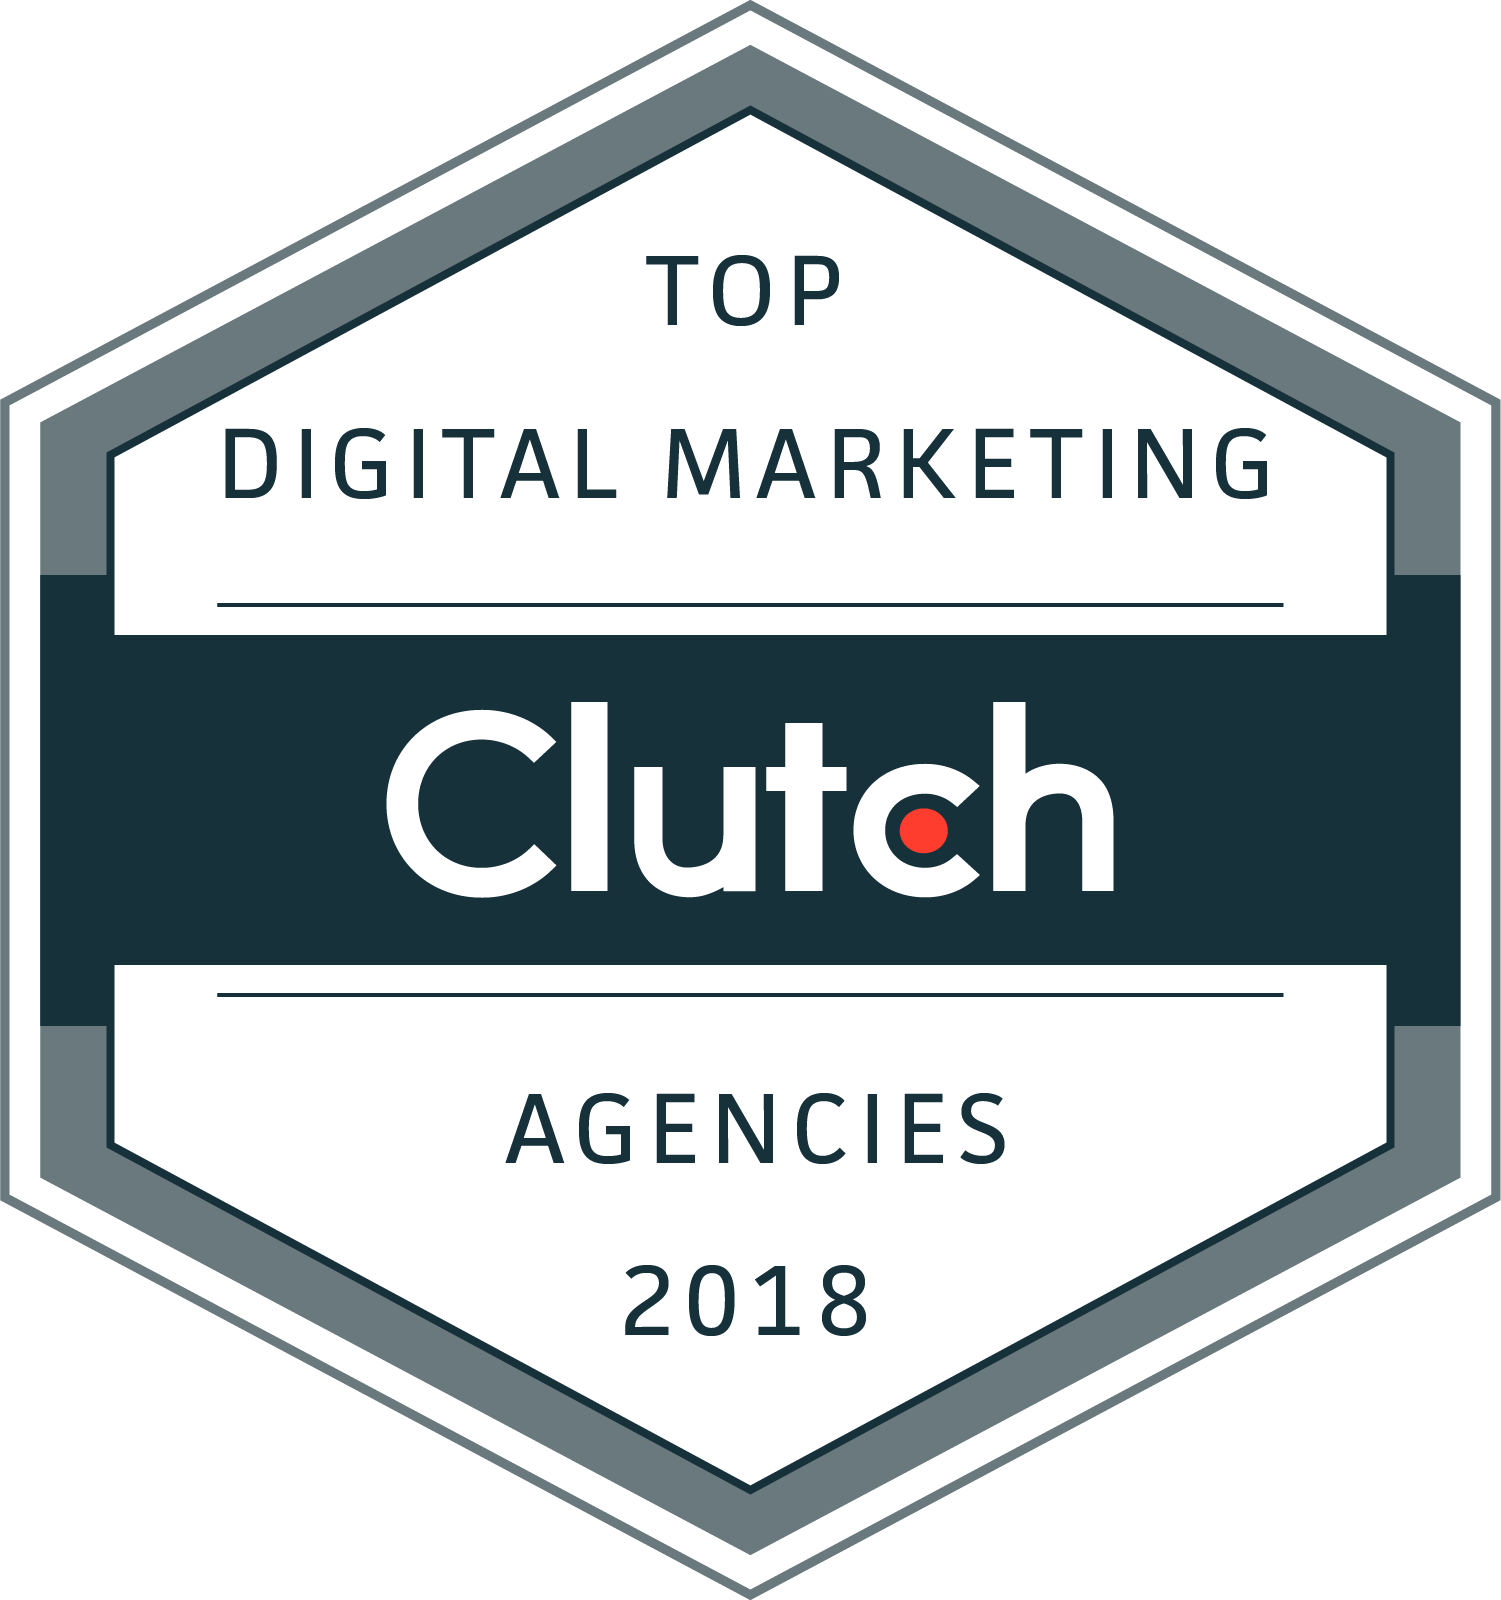 Clutch Top Digital Marketing Agency